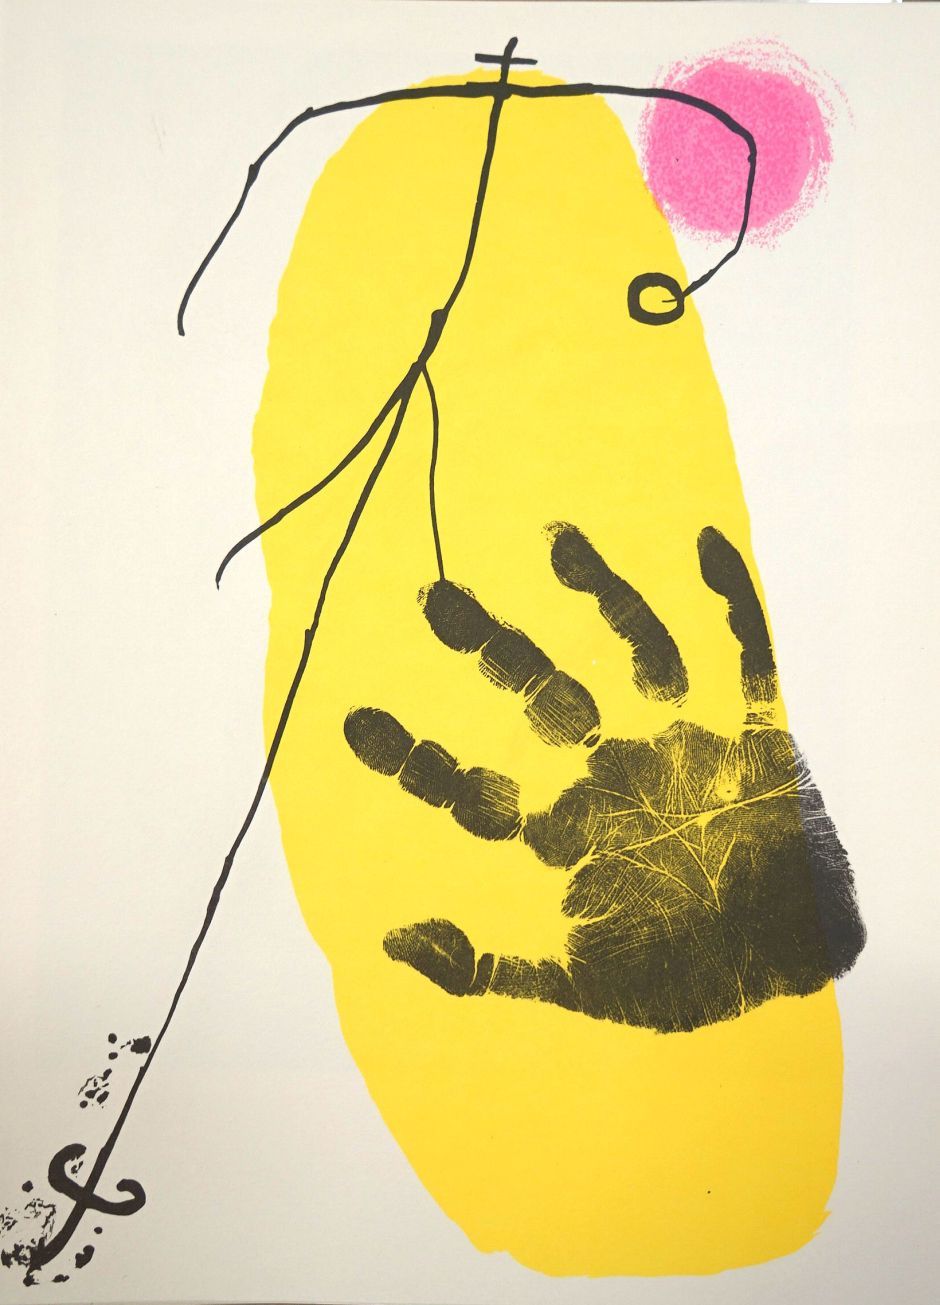 Lot 3311, Auction  115, Derrière le Miroir und Miró, Joan - Illustr., No. 87-88-89 - J. Miró